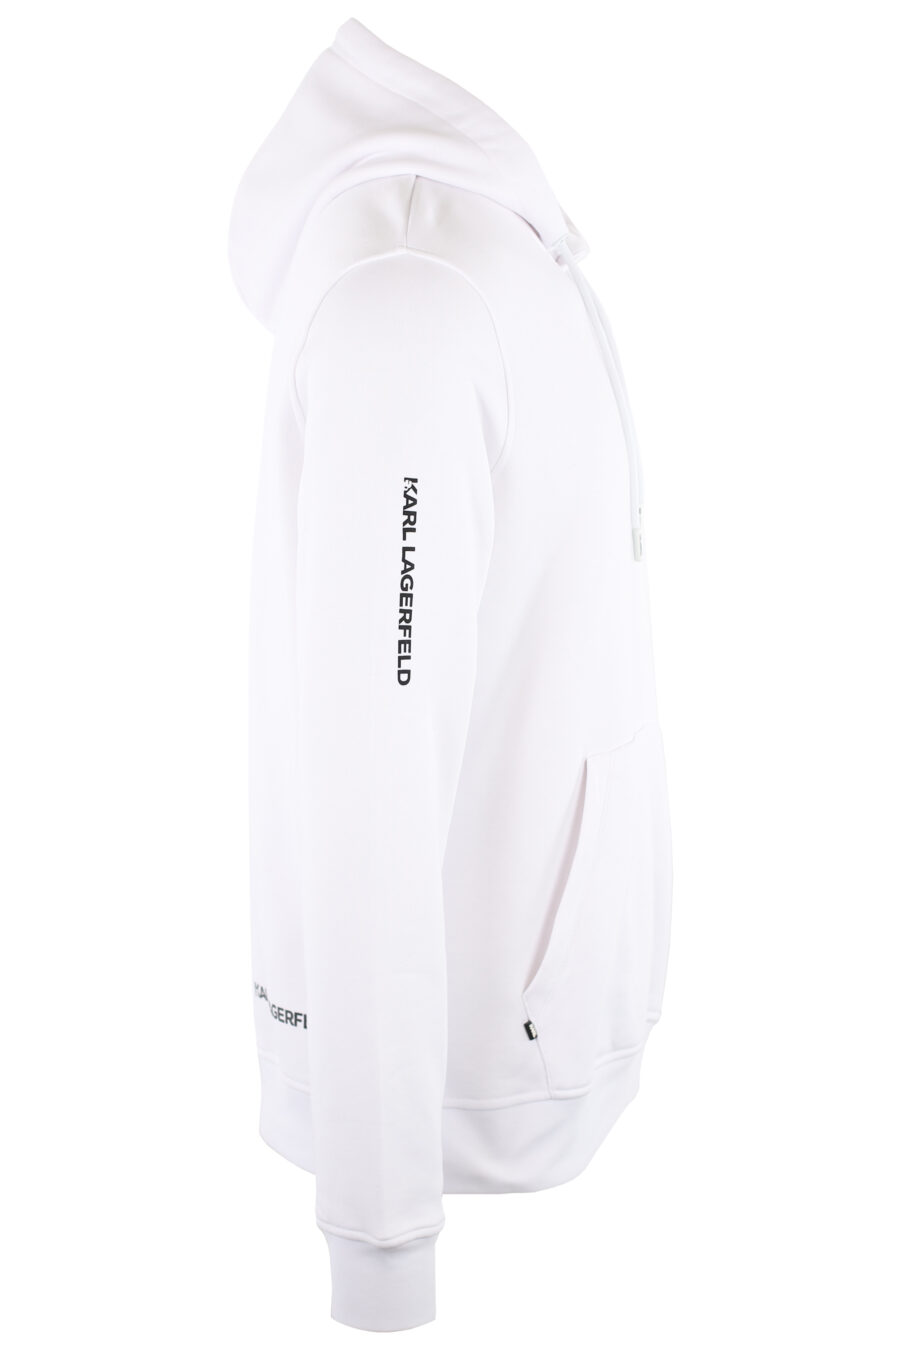 Sudadera blanca con capucha y logo "ikonik" pequeño - IMG 7461